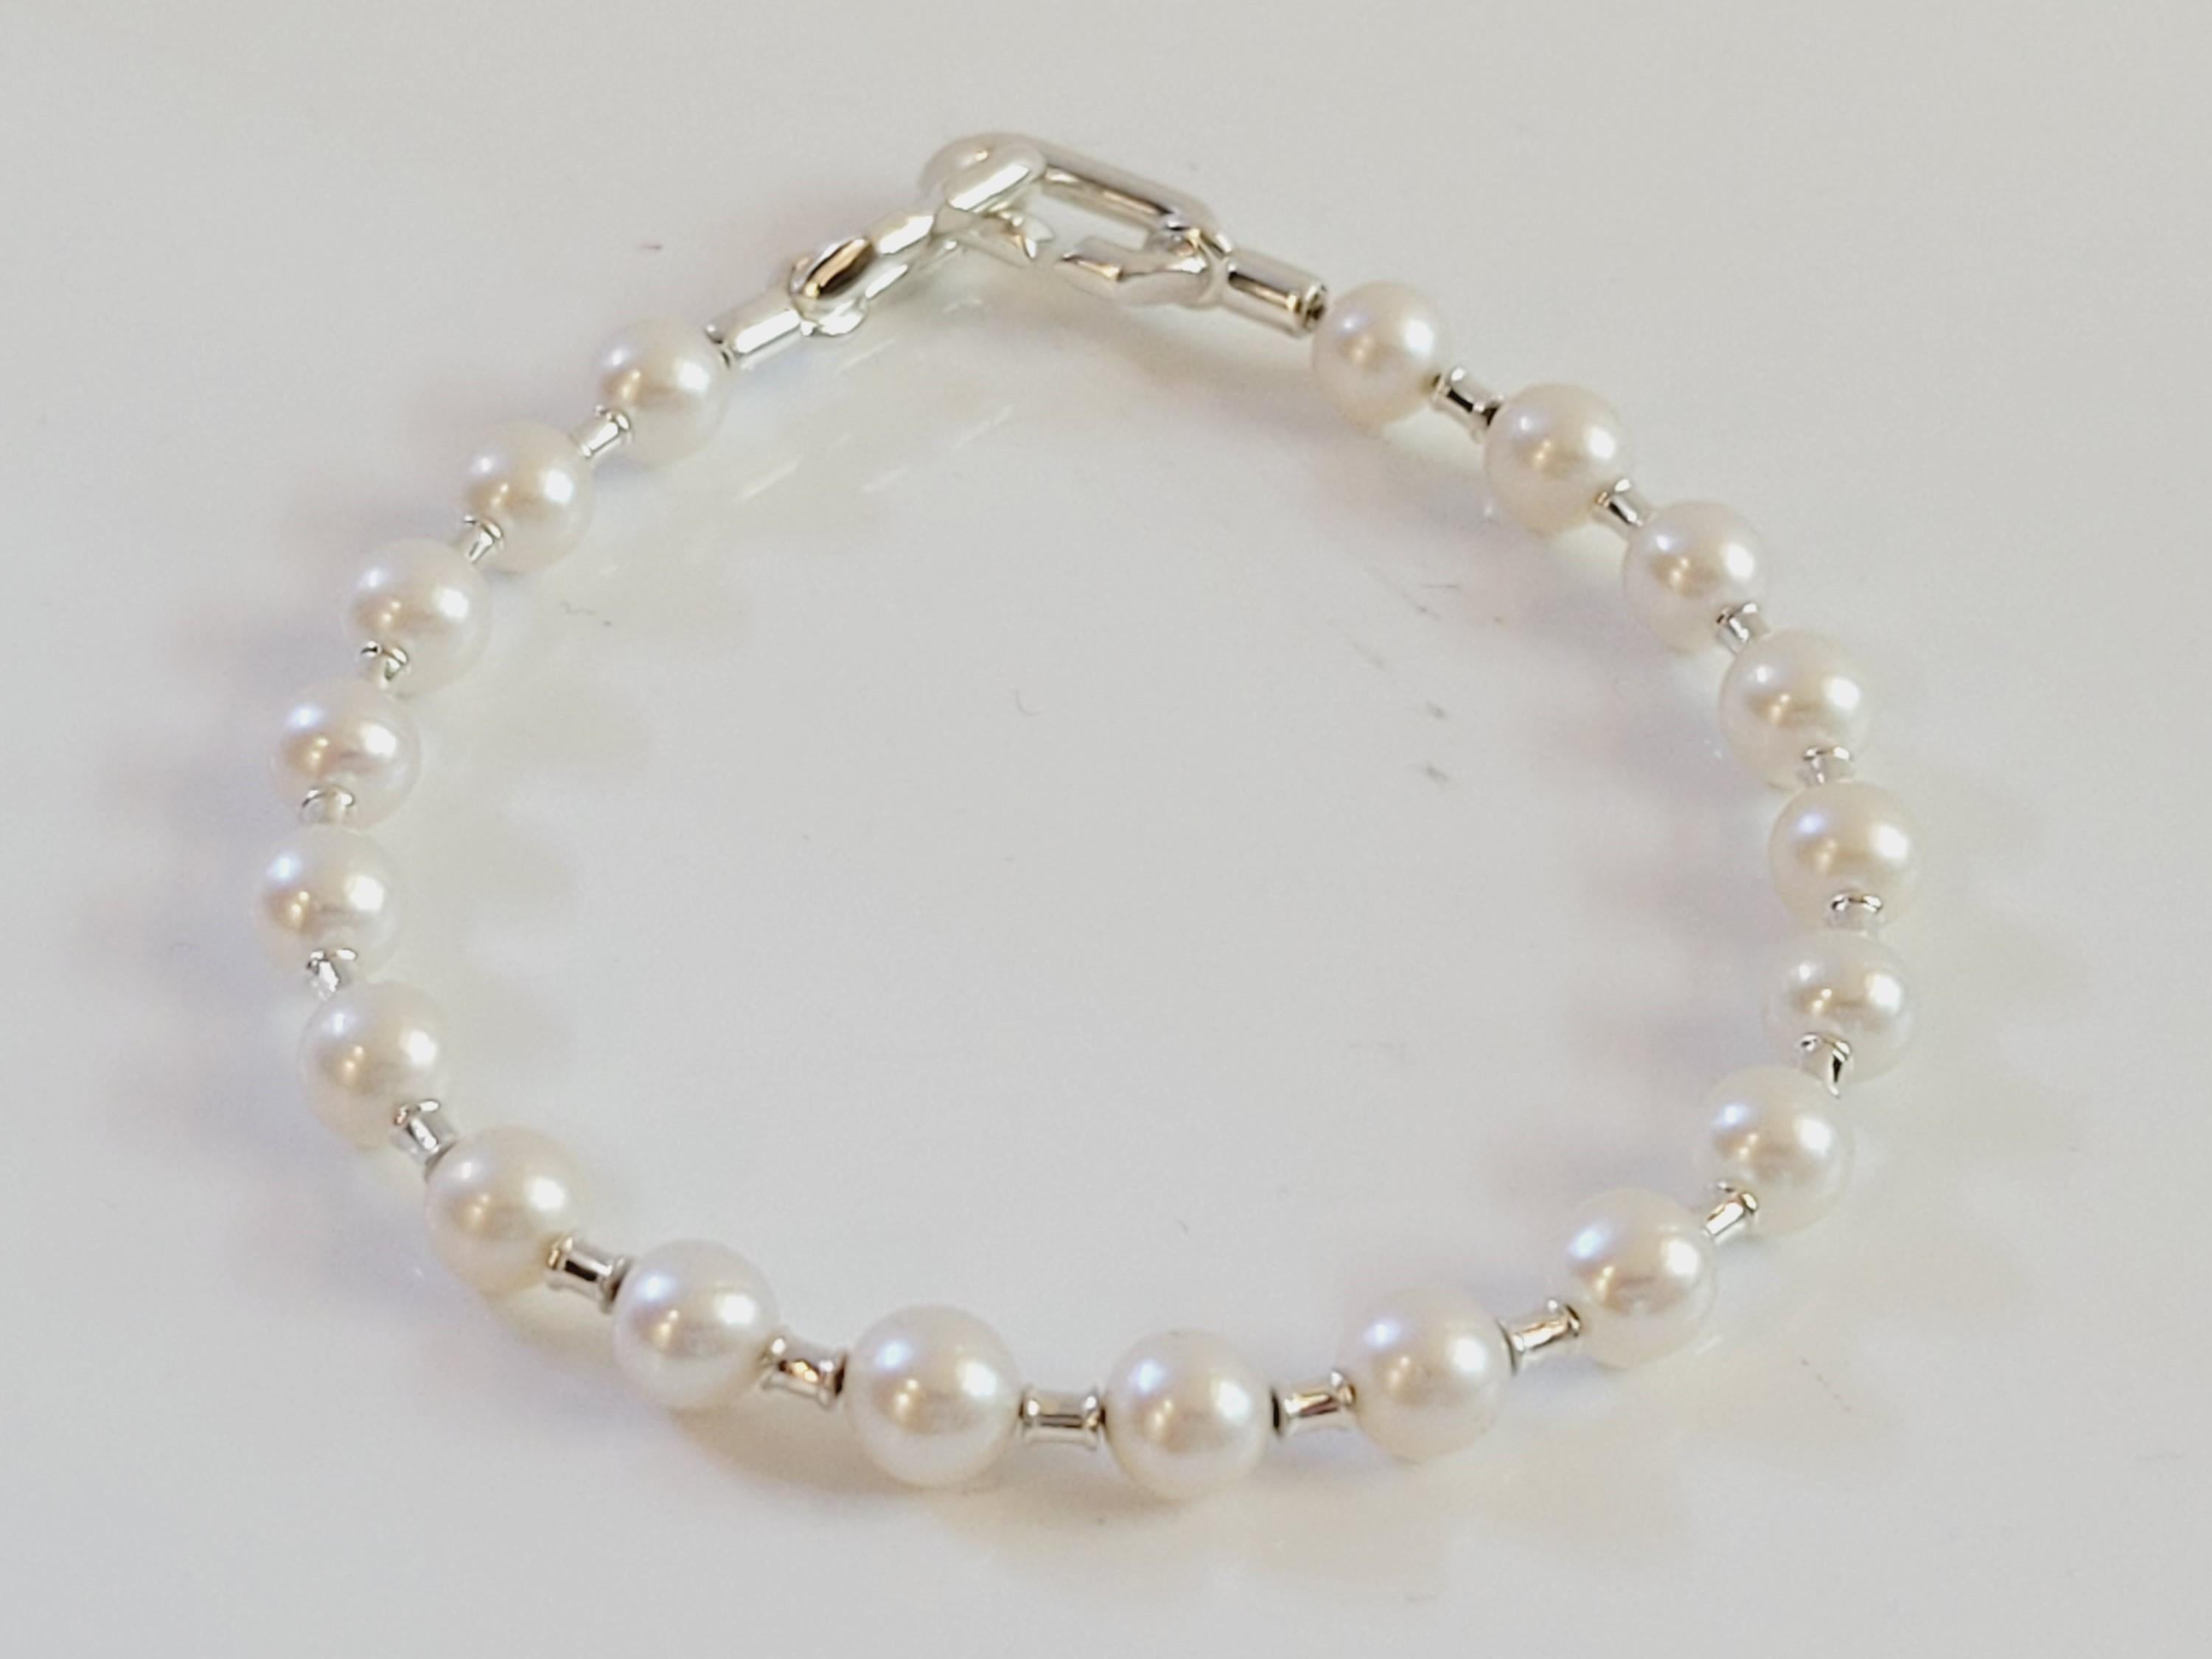 Argent sterling avec perles de culture d'eau douce
Marque Tiffany & co
Type Bracelet
Taille Moyenne
Longueur 7.5